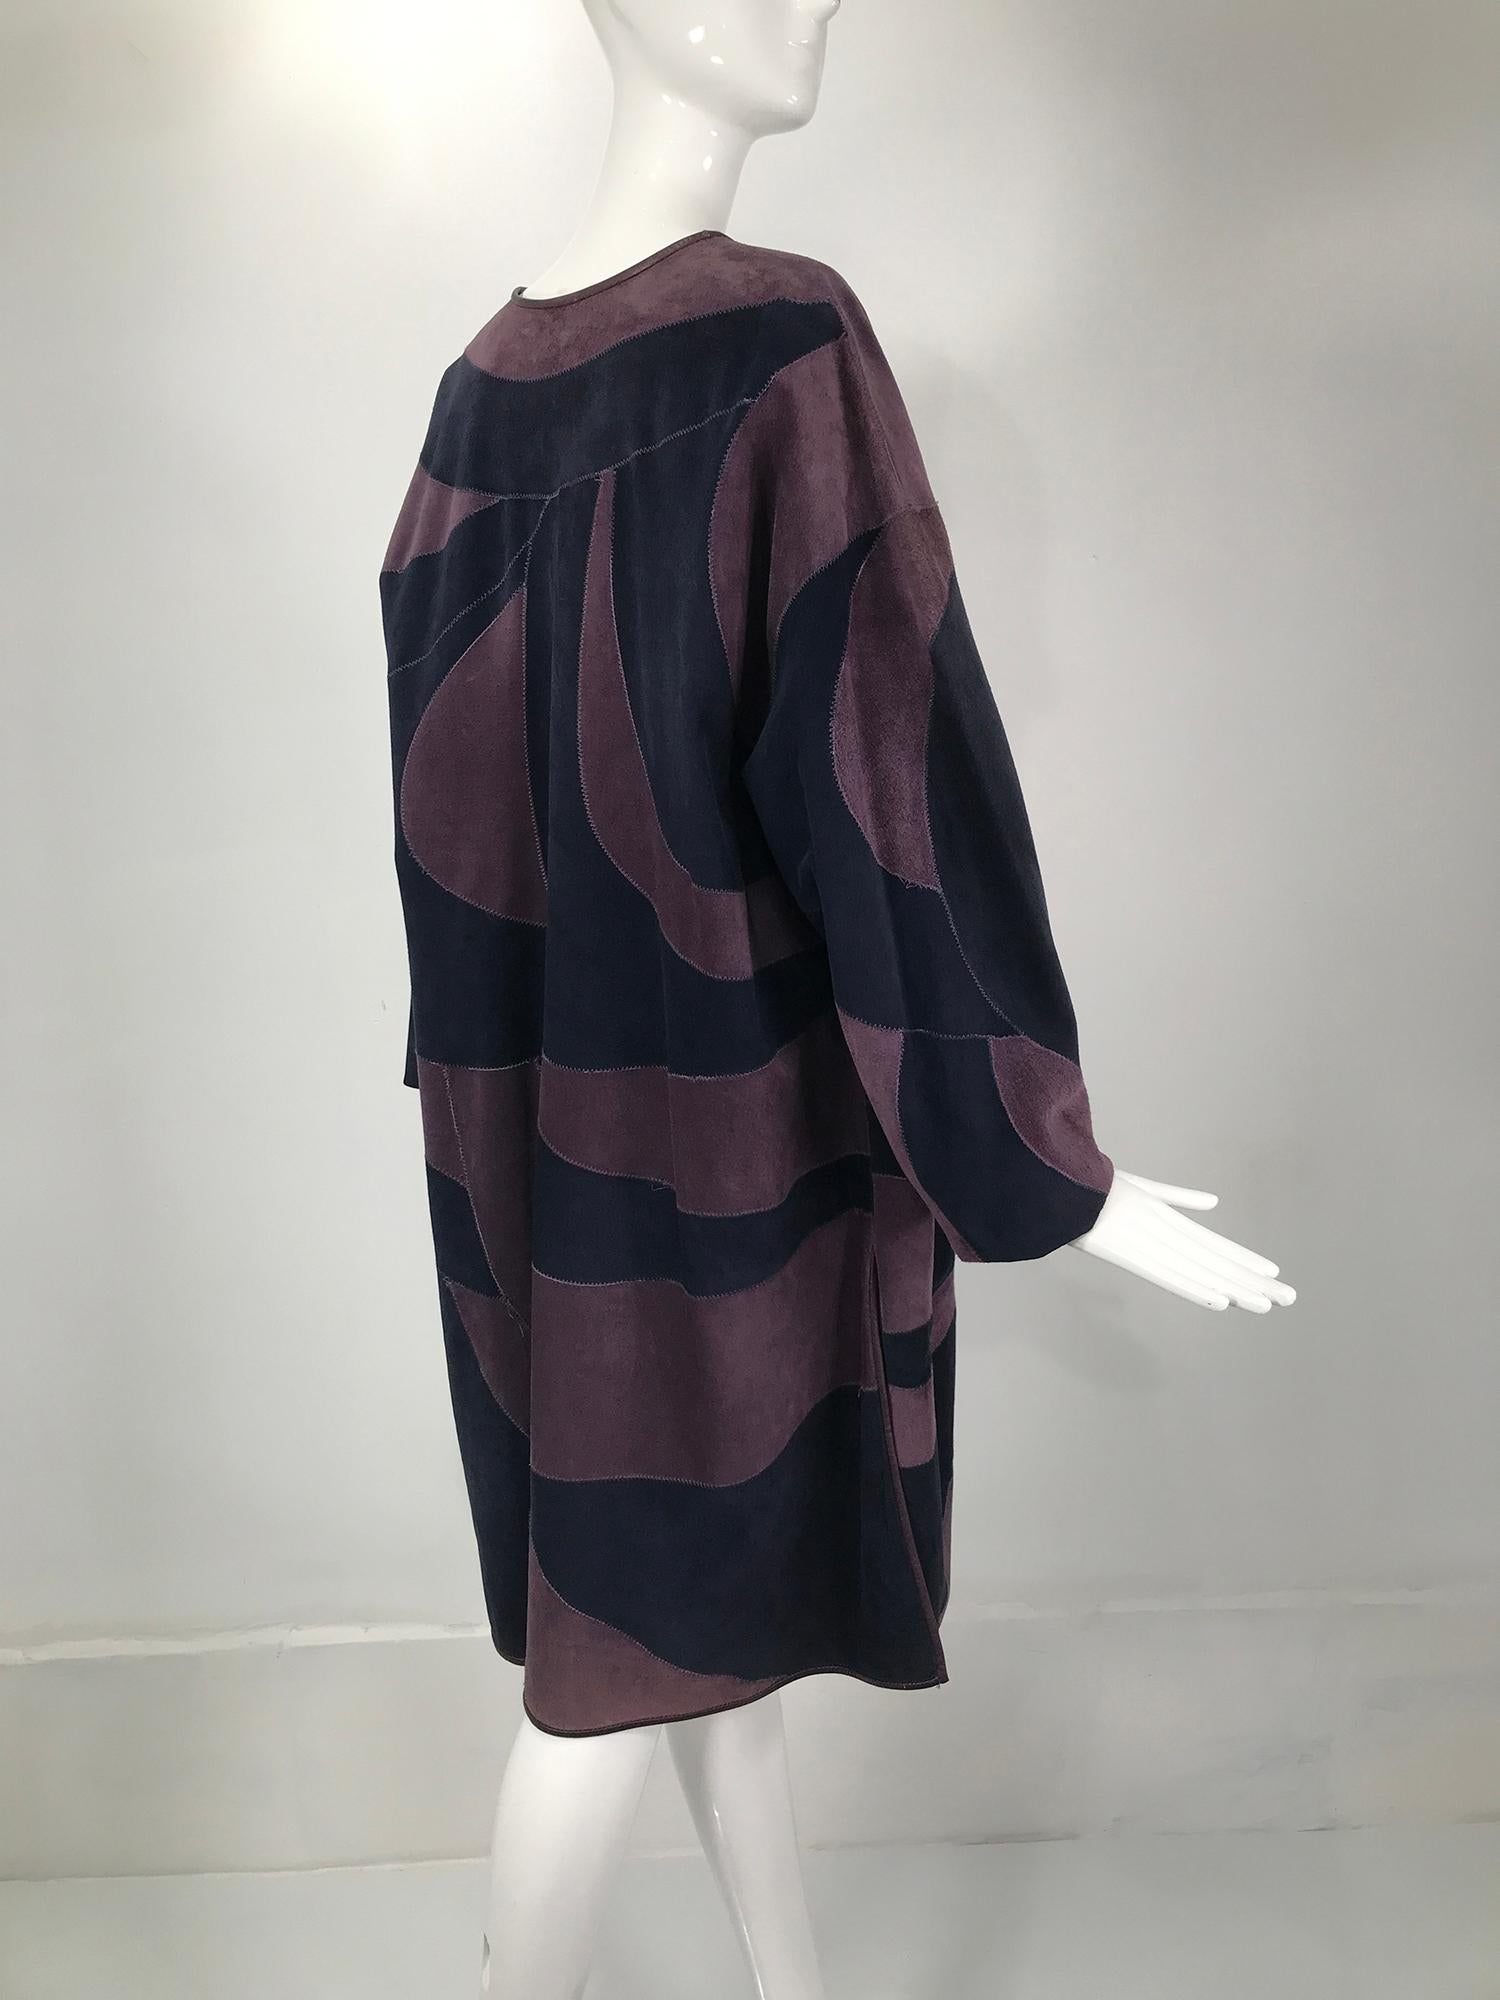 Women's or Men's Vintage Patchwork Suede Coat in Purple & Navy Finland